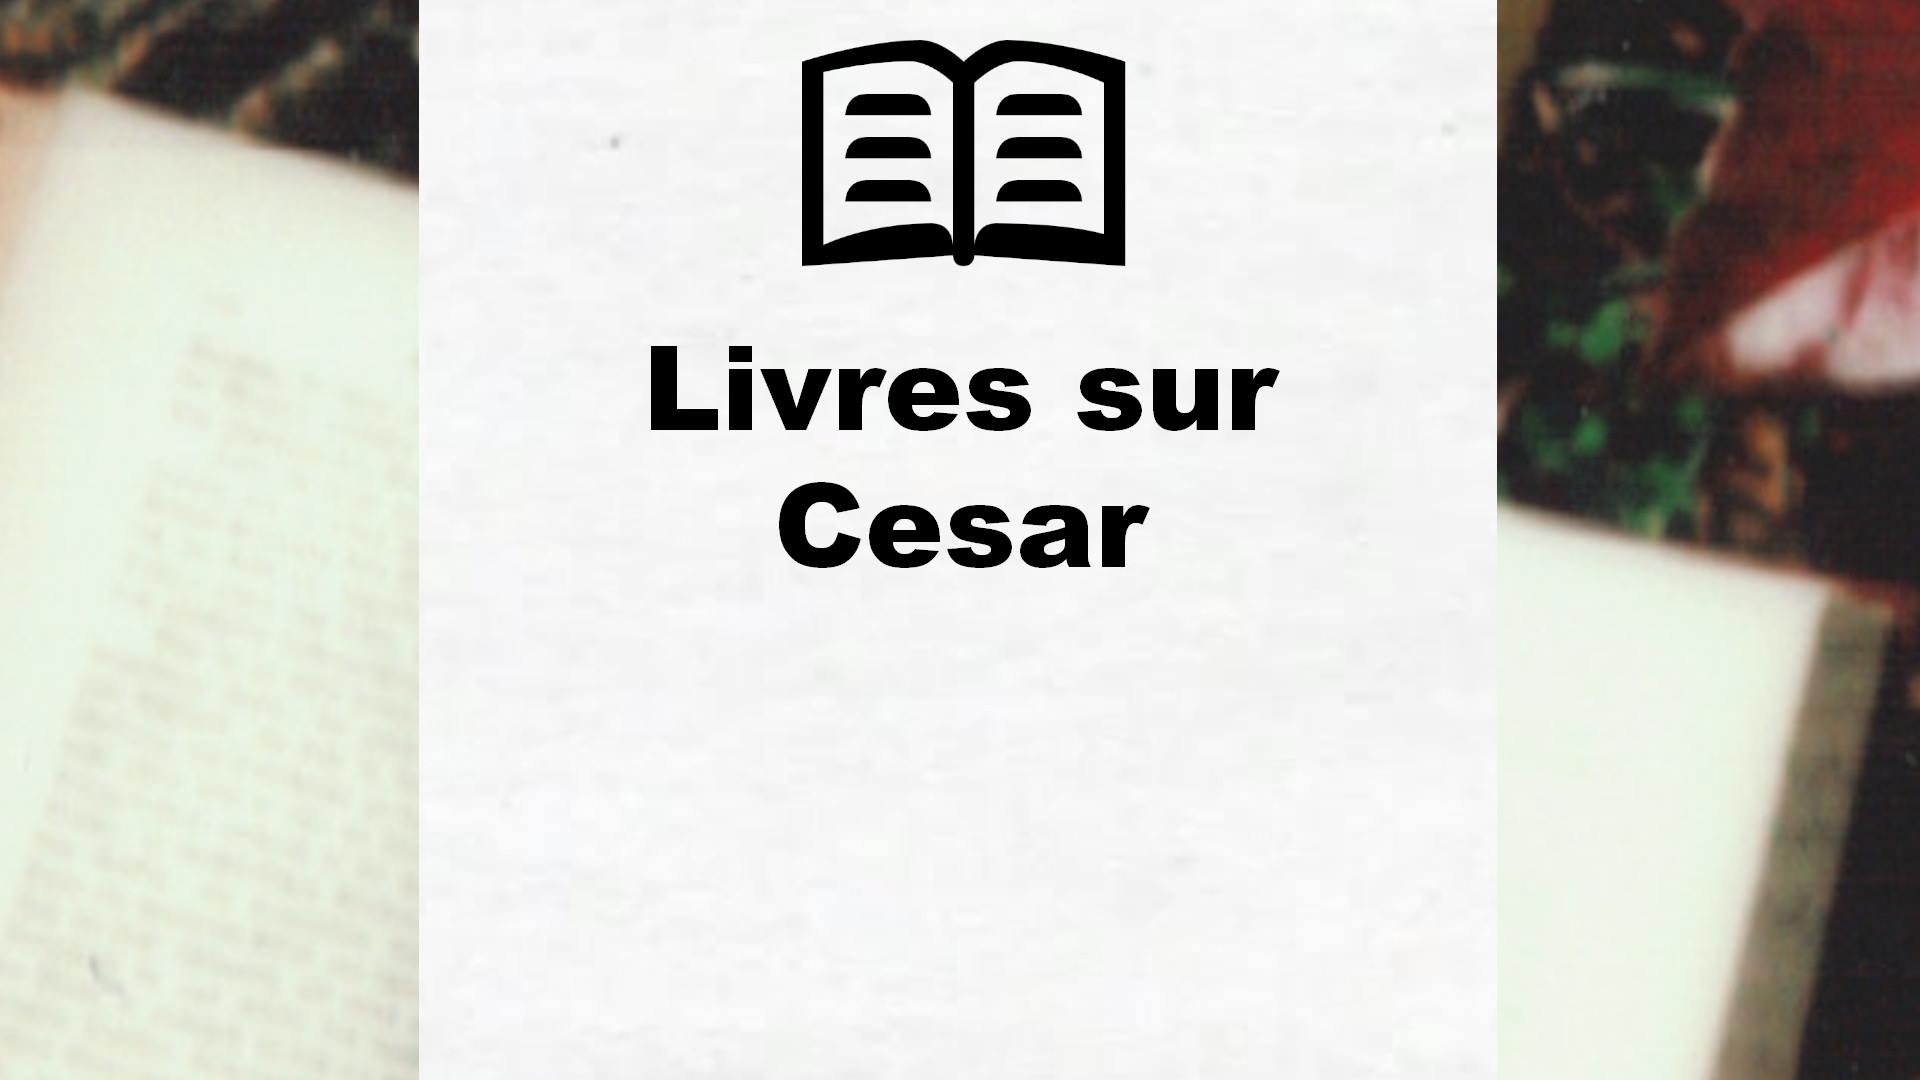 Livres sur Cesar